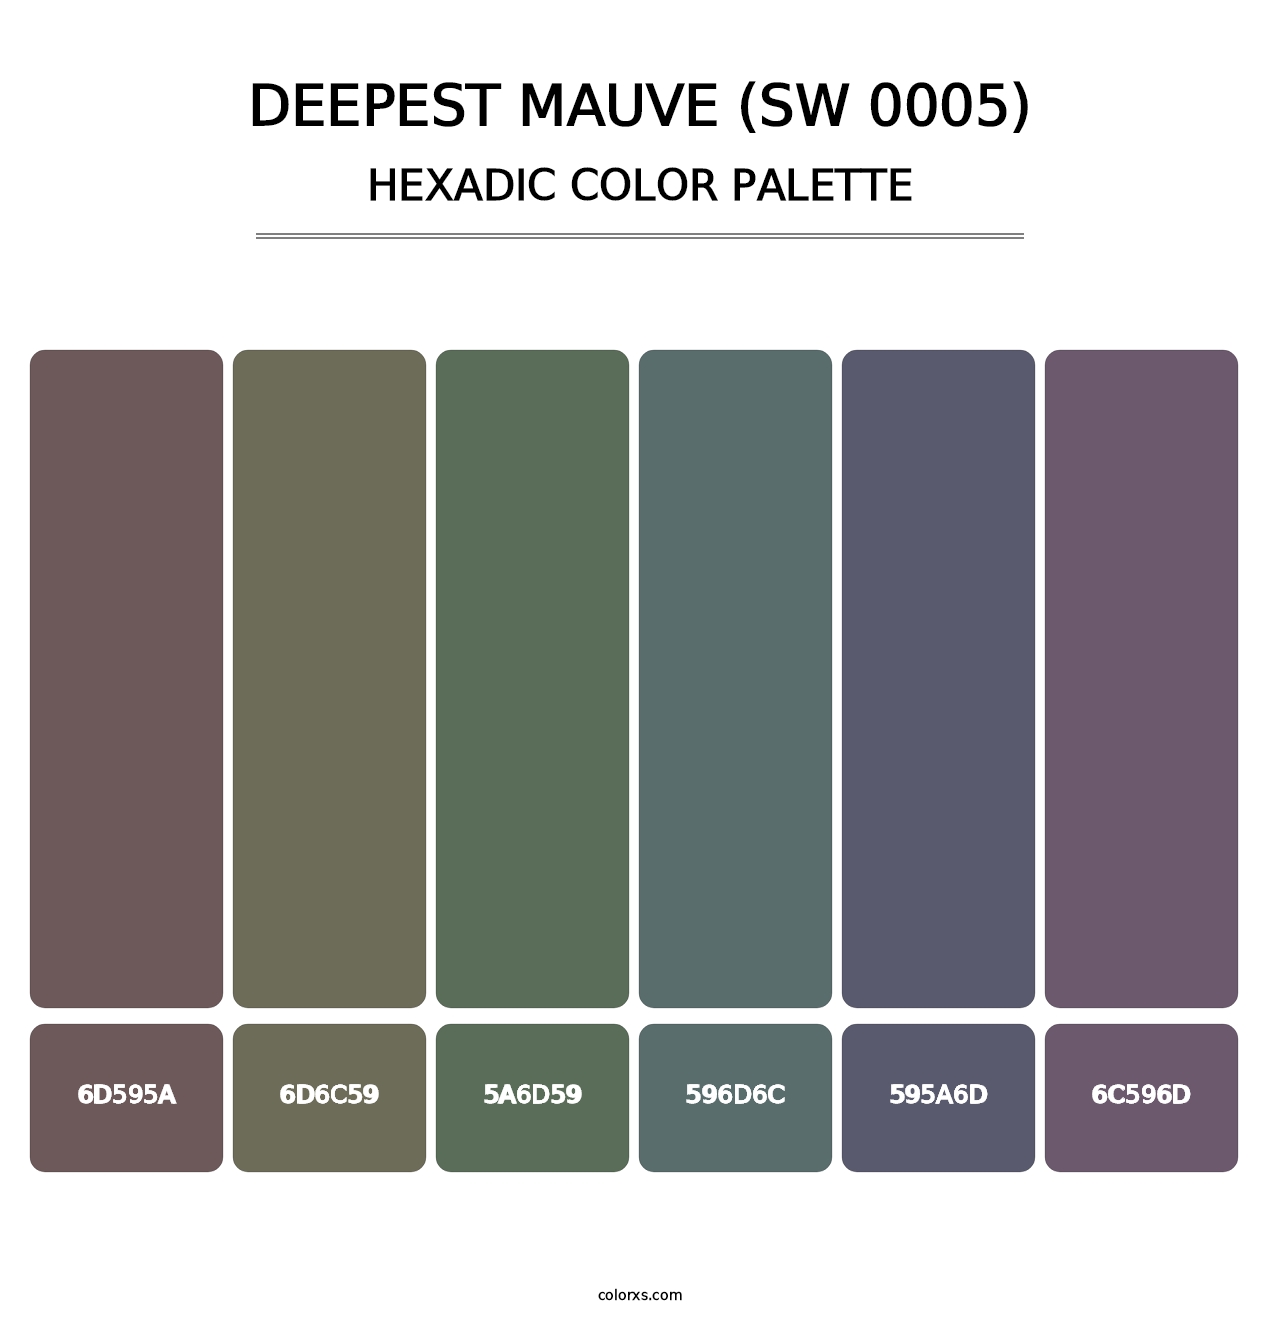 Deepest Mauve (SW 0005) - Hexadic Color Palette